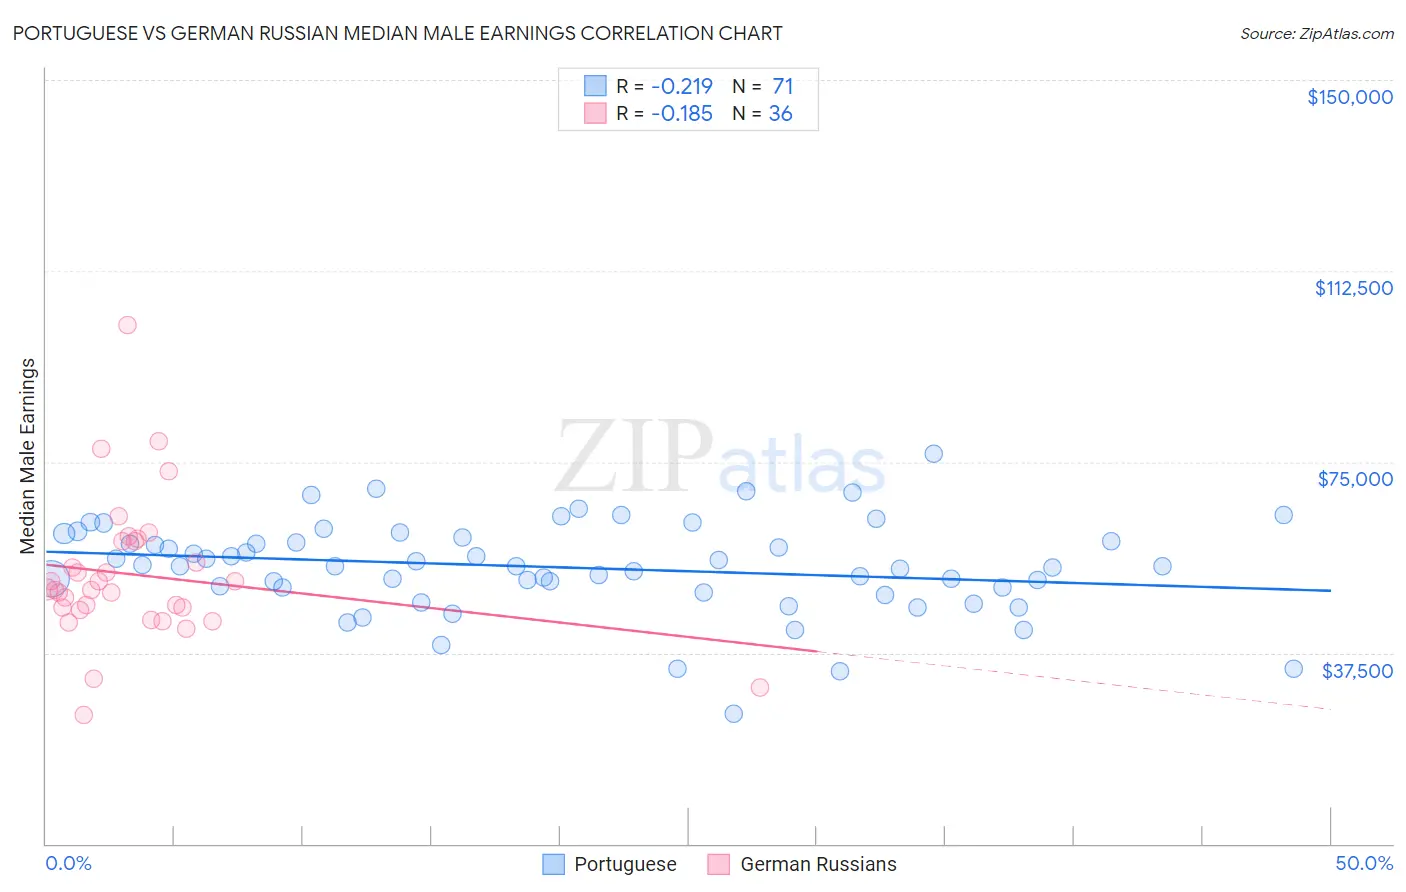 Portuguese vs German Russian Median Male Earnings